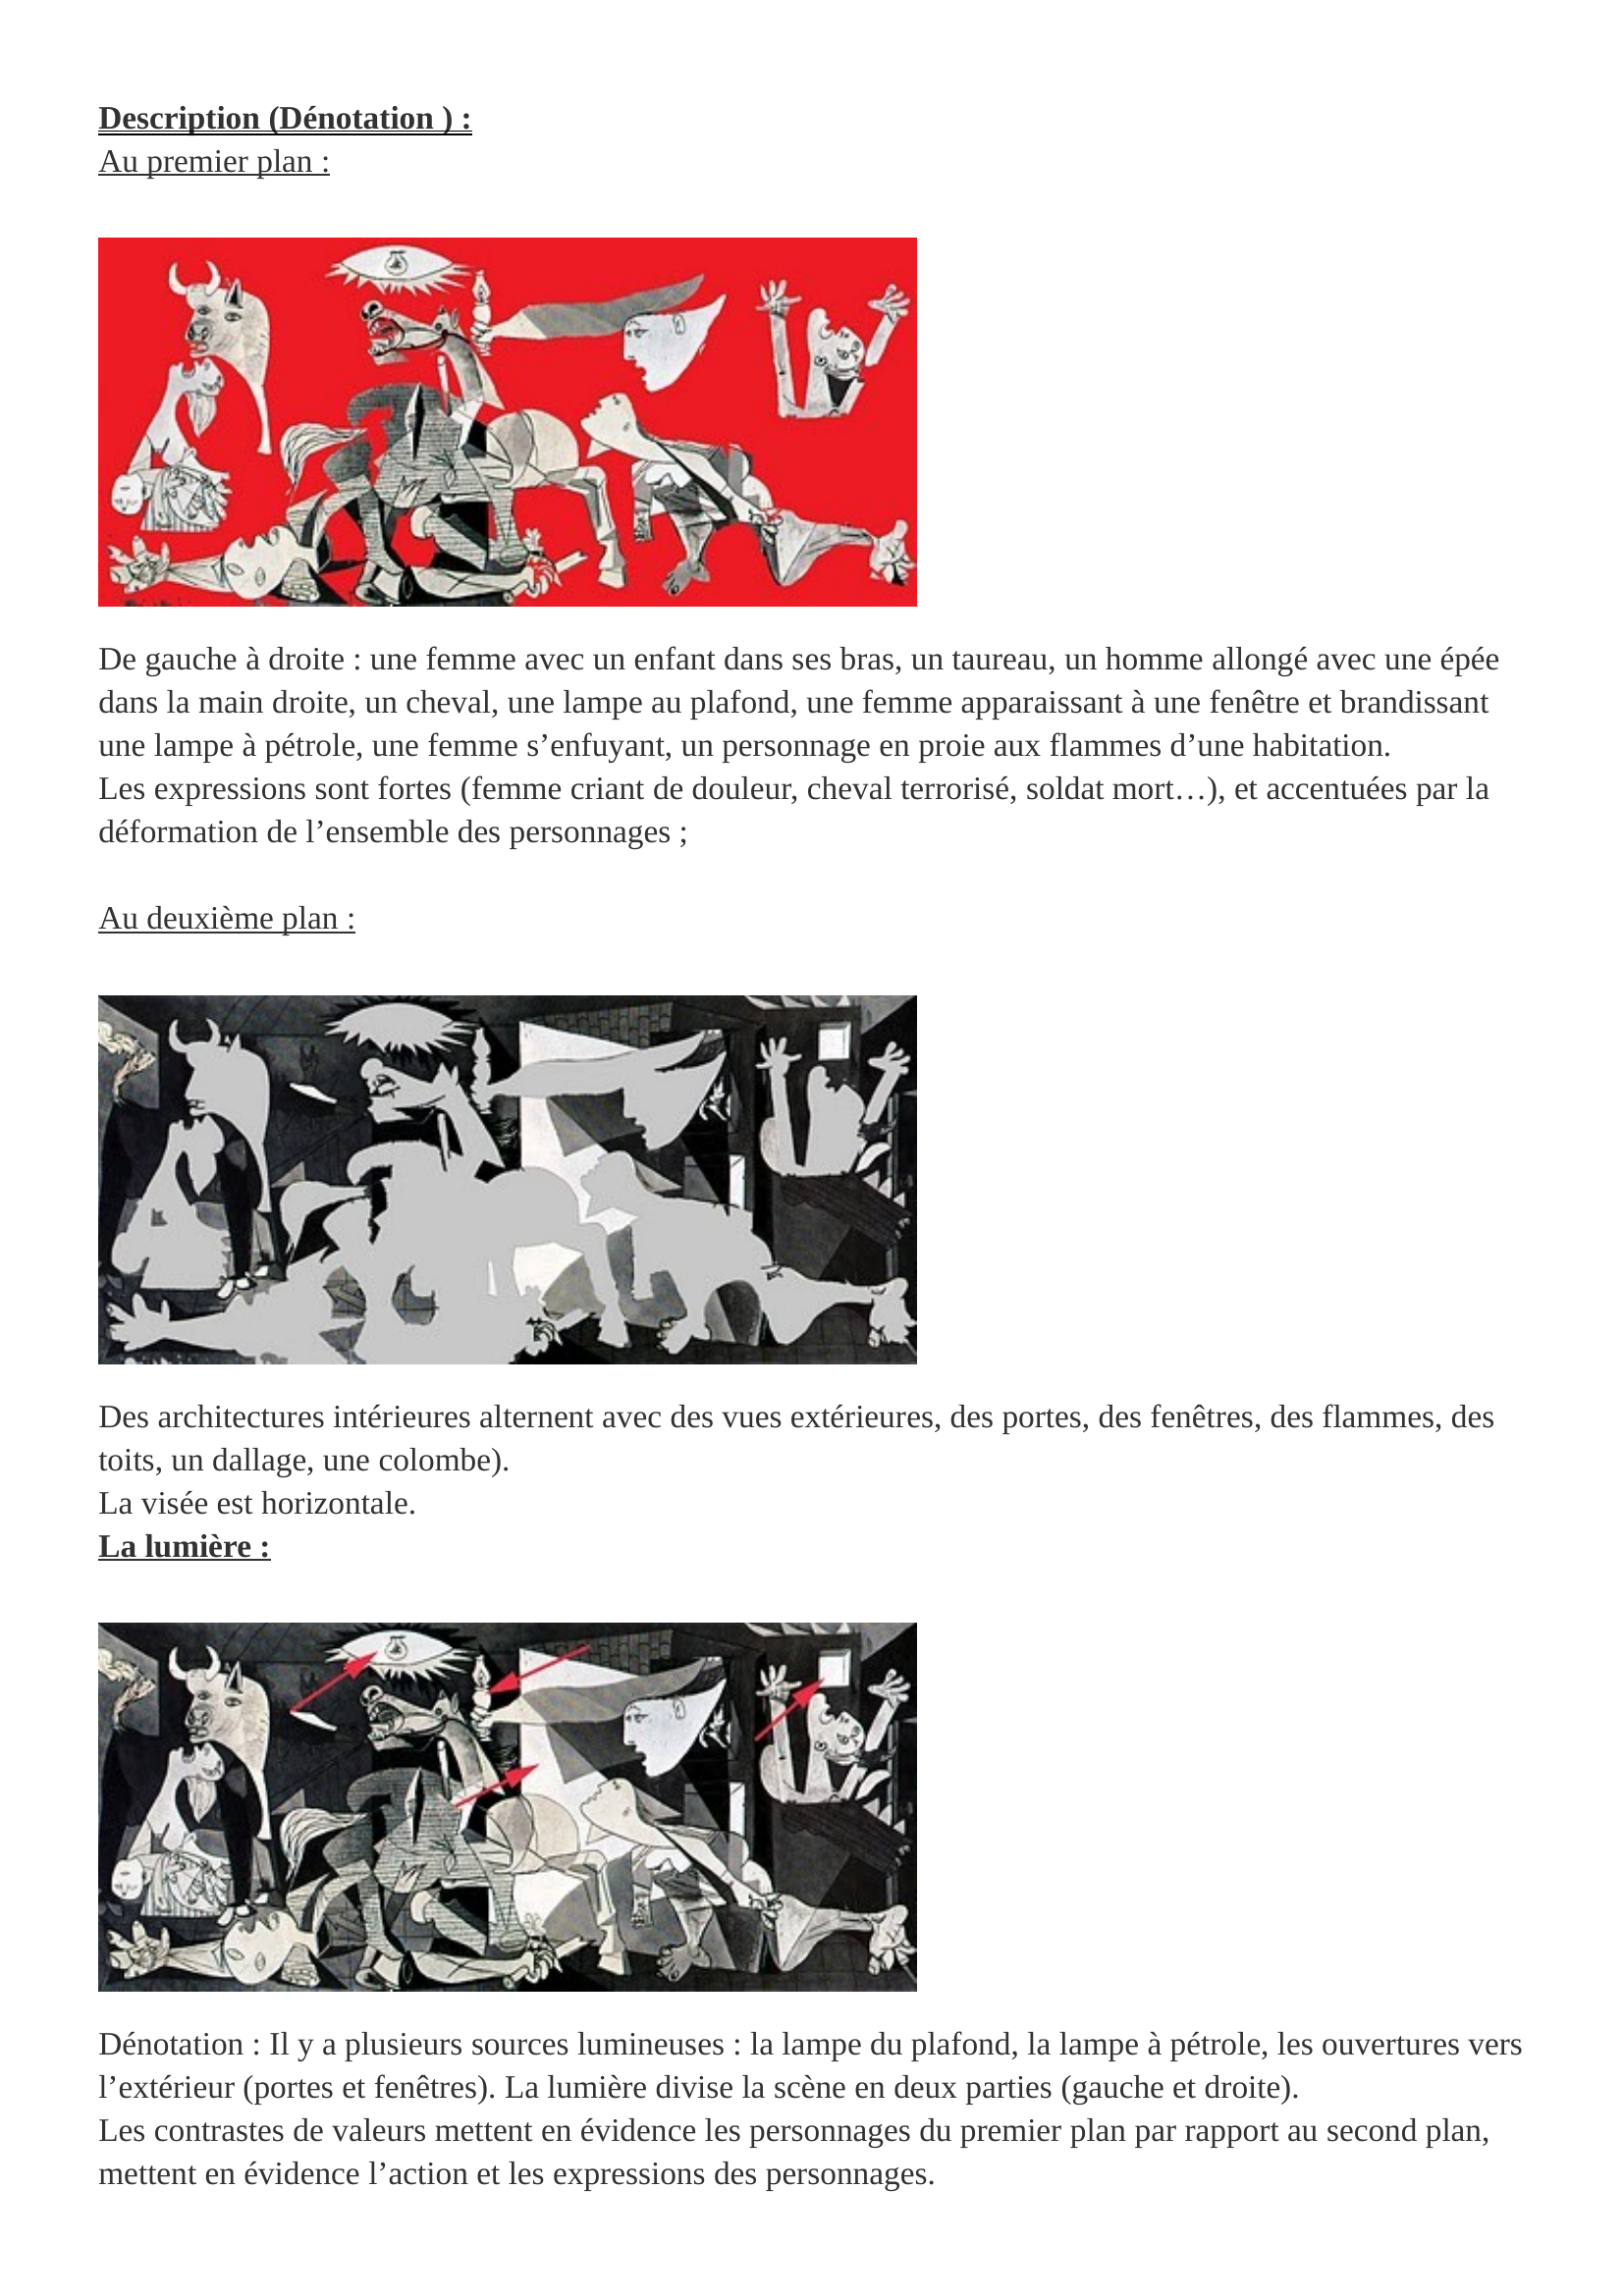 Prévisualisation du document Guernica